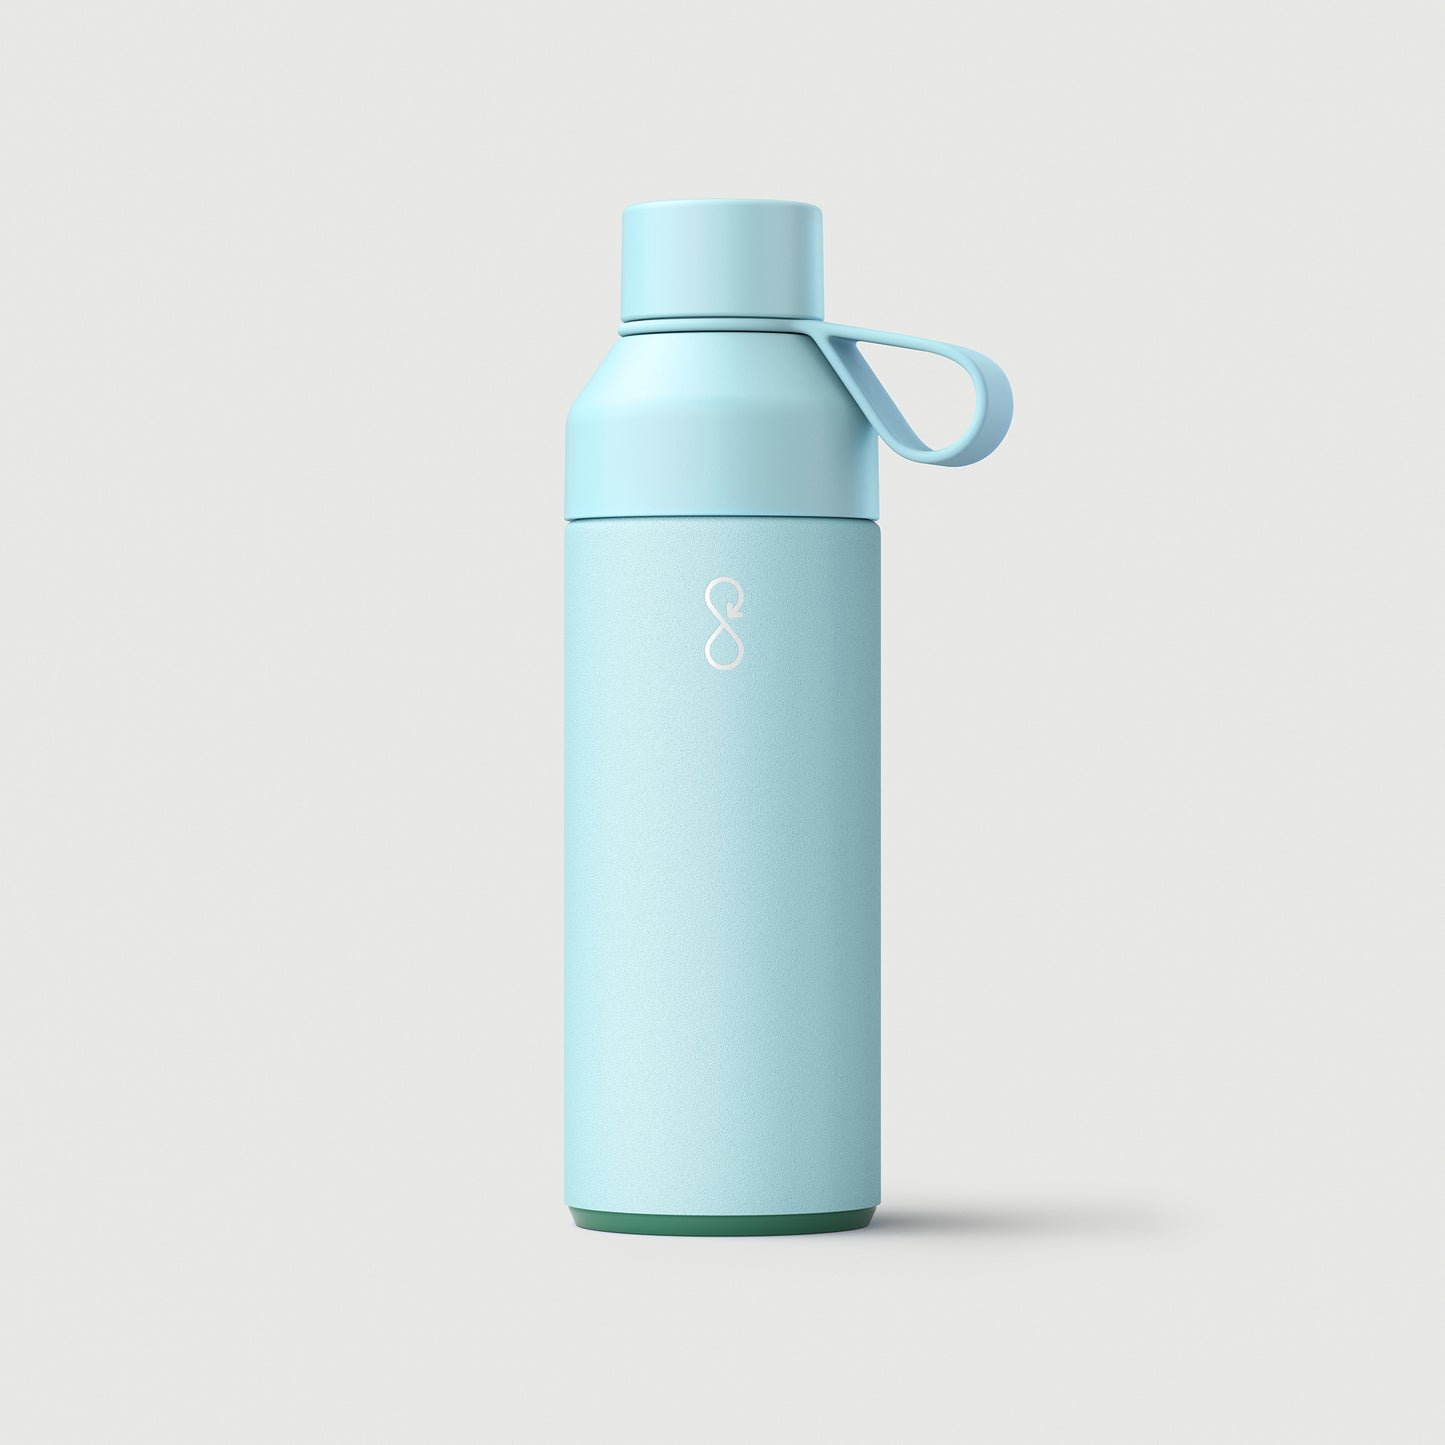 Sky Blue Water Bottle